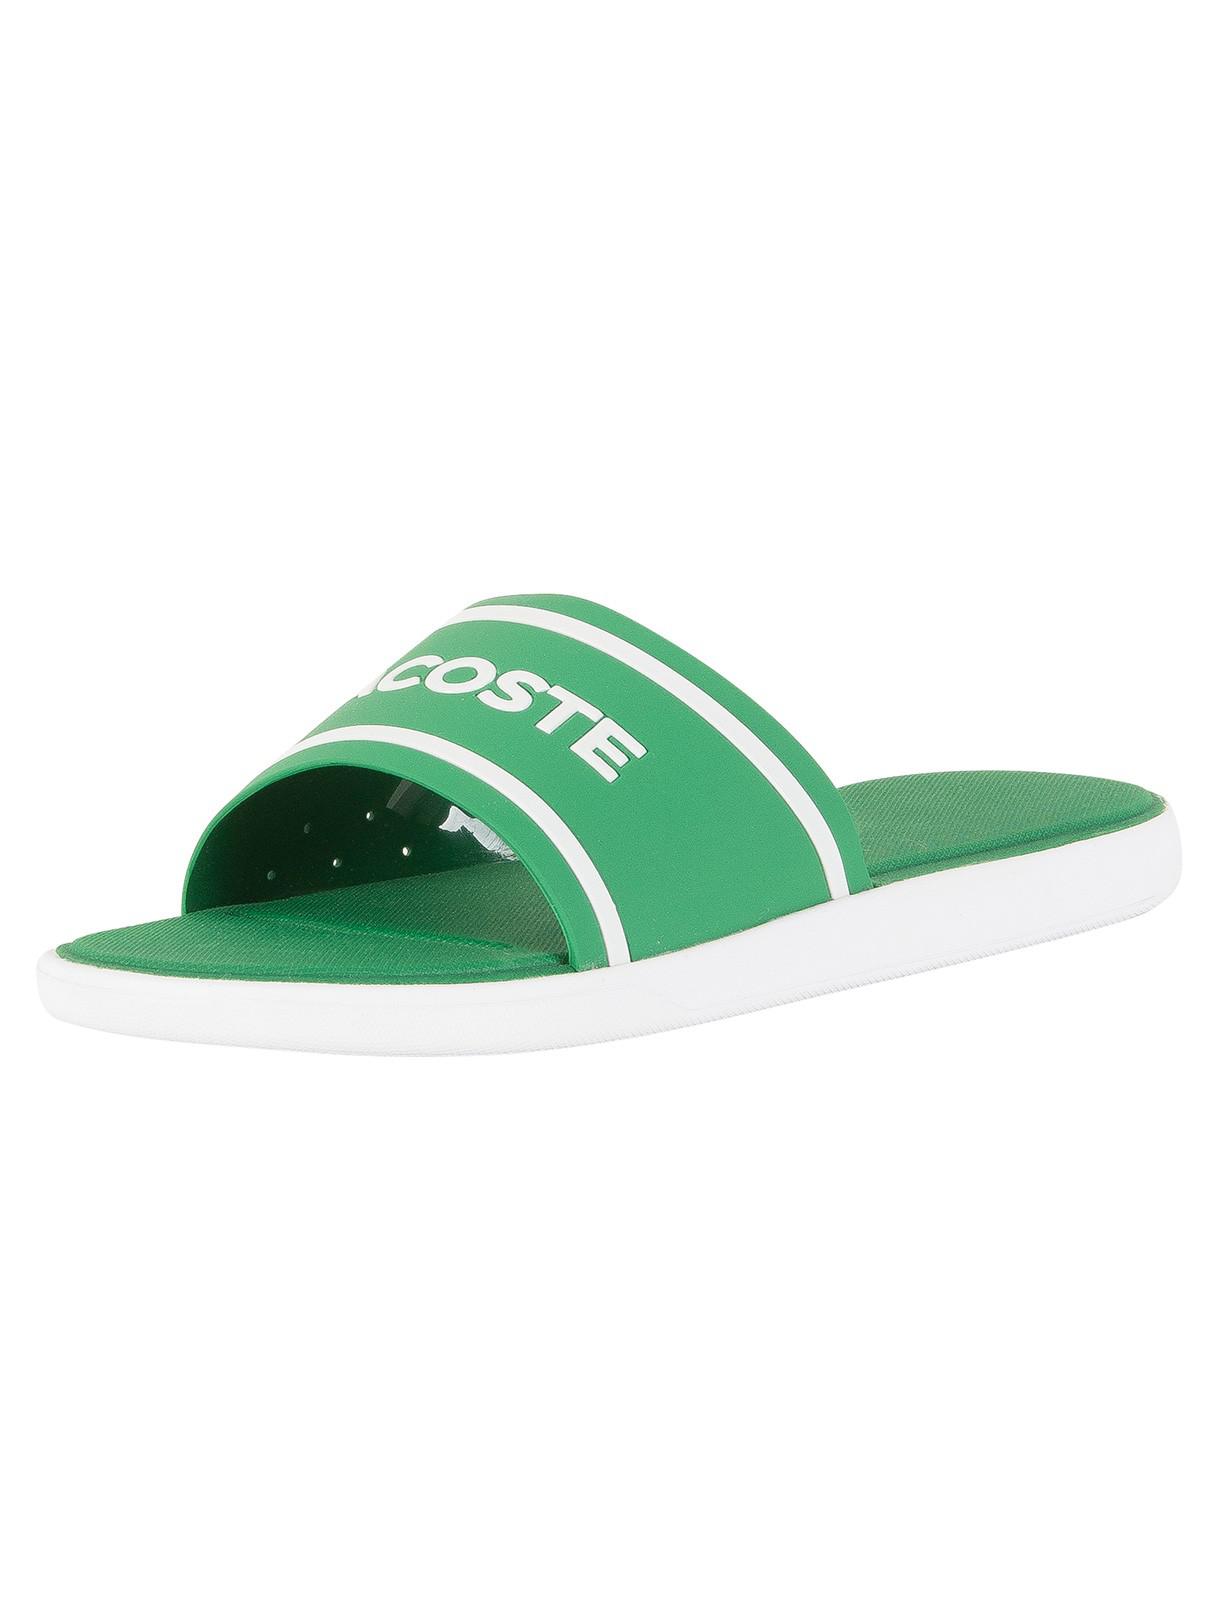 Lacoste Green/white L.30 Slide 118 3 Cam Flip Flops for Men | Lyst